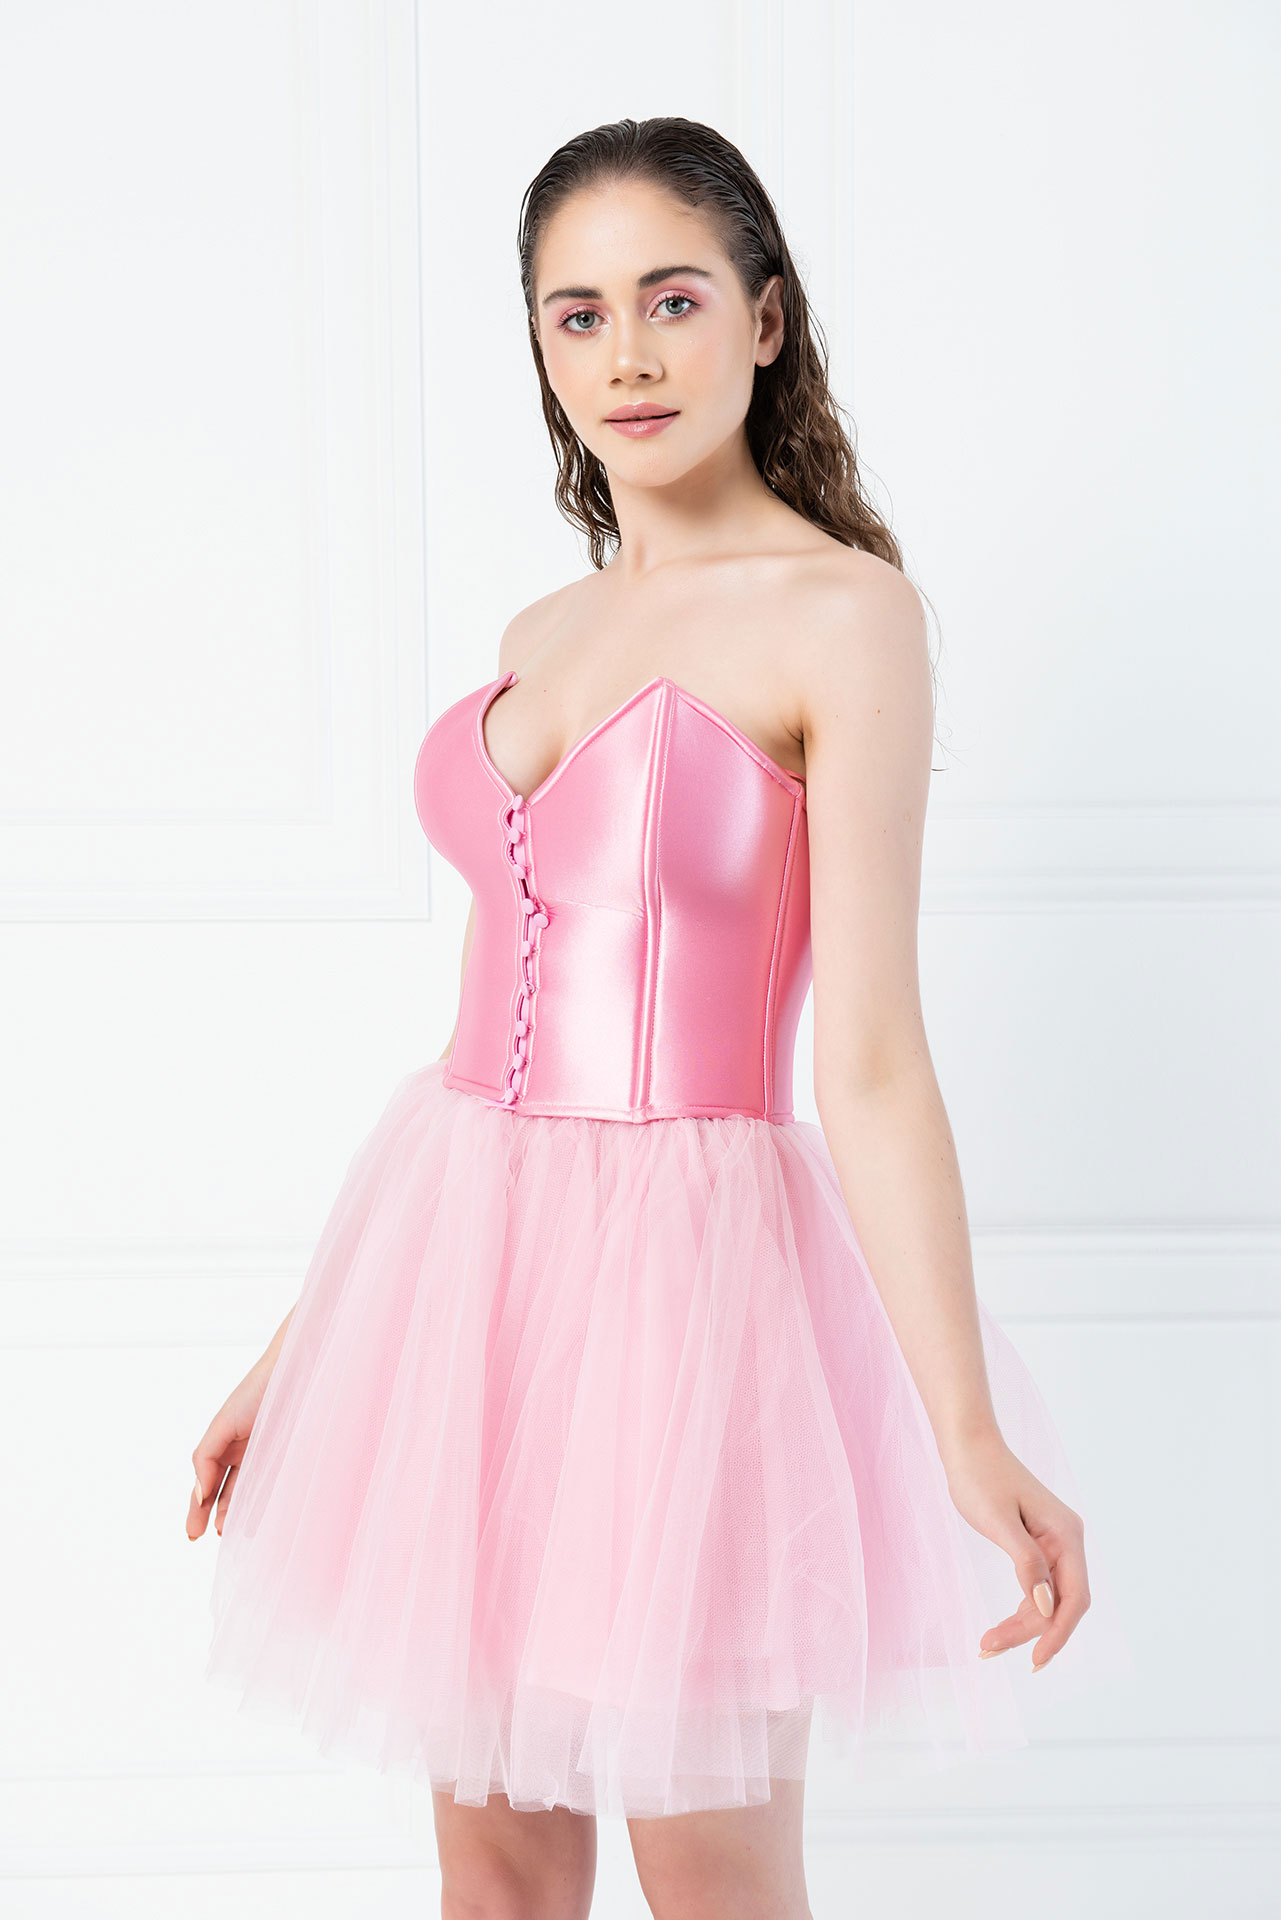 Wholesale Pink Ballerina Skirt